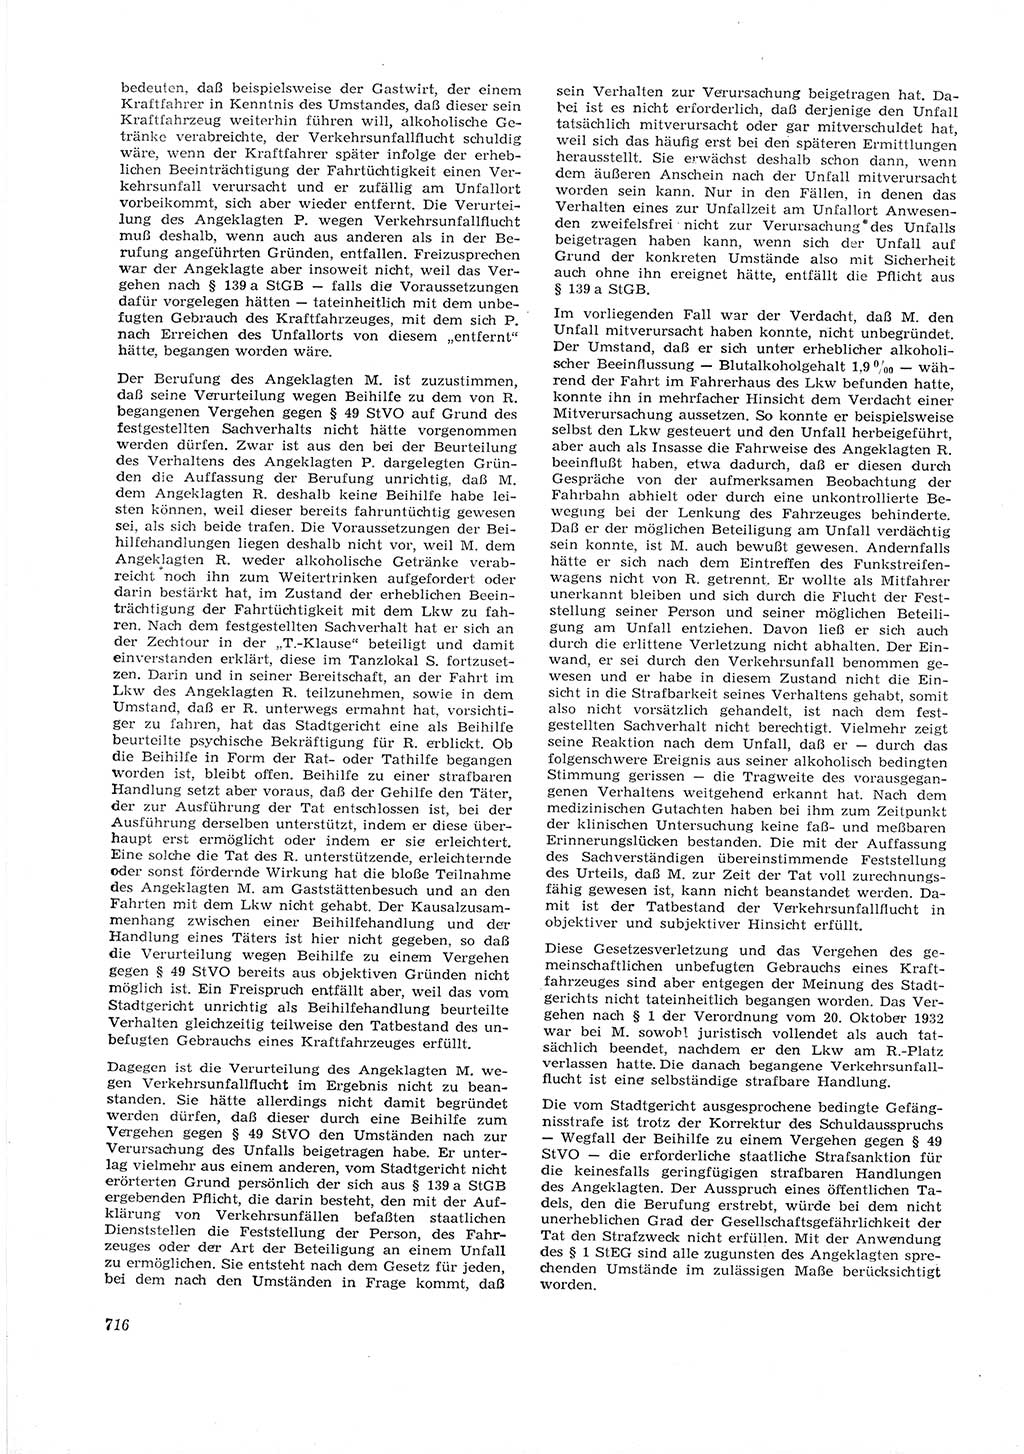 Neue Justiz (NJ), Zeitschrift für Recht und Rechtswissenschaft [Deutsche Demokratische Republik (DDR)], 16. Jahrgang 1962, Seite 716 (NJ DDR 1962, S. 716)